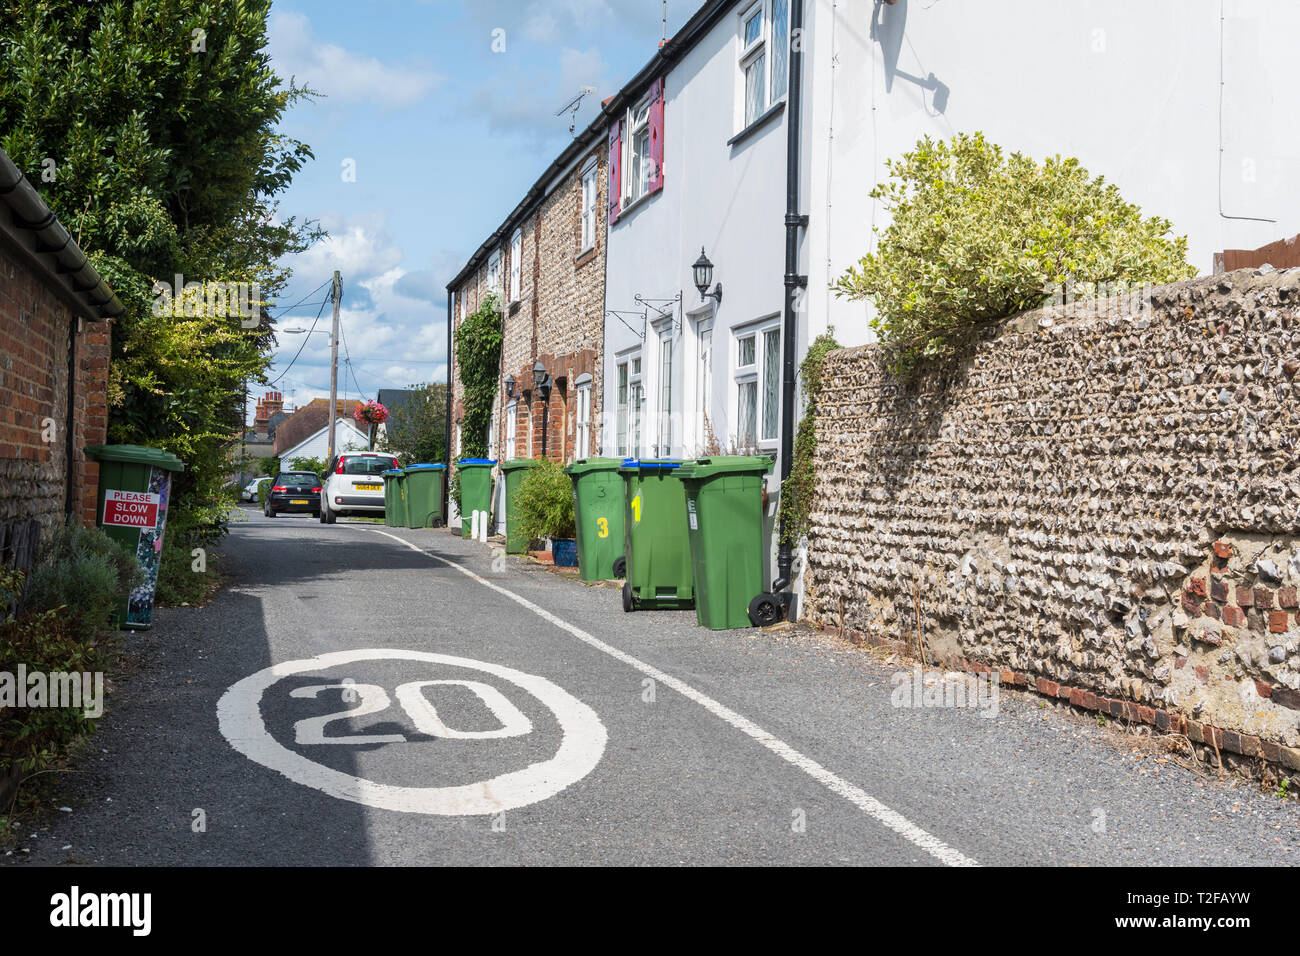 Limitation de vitesse 20MPH signer peint dans une route étroite dans une ville britannique dans l'Herm, West Sussex, UK. 20MPH limite de vitesse dans une rue étroite. Banque D'Images